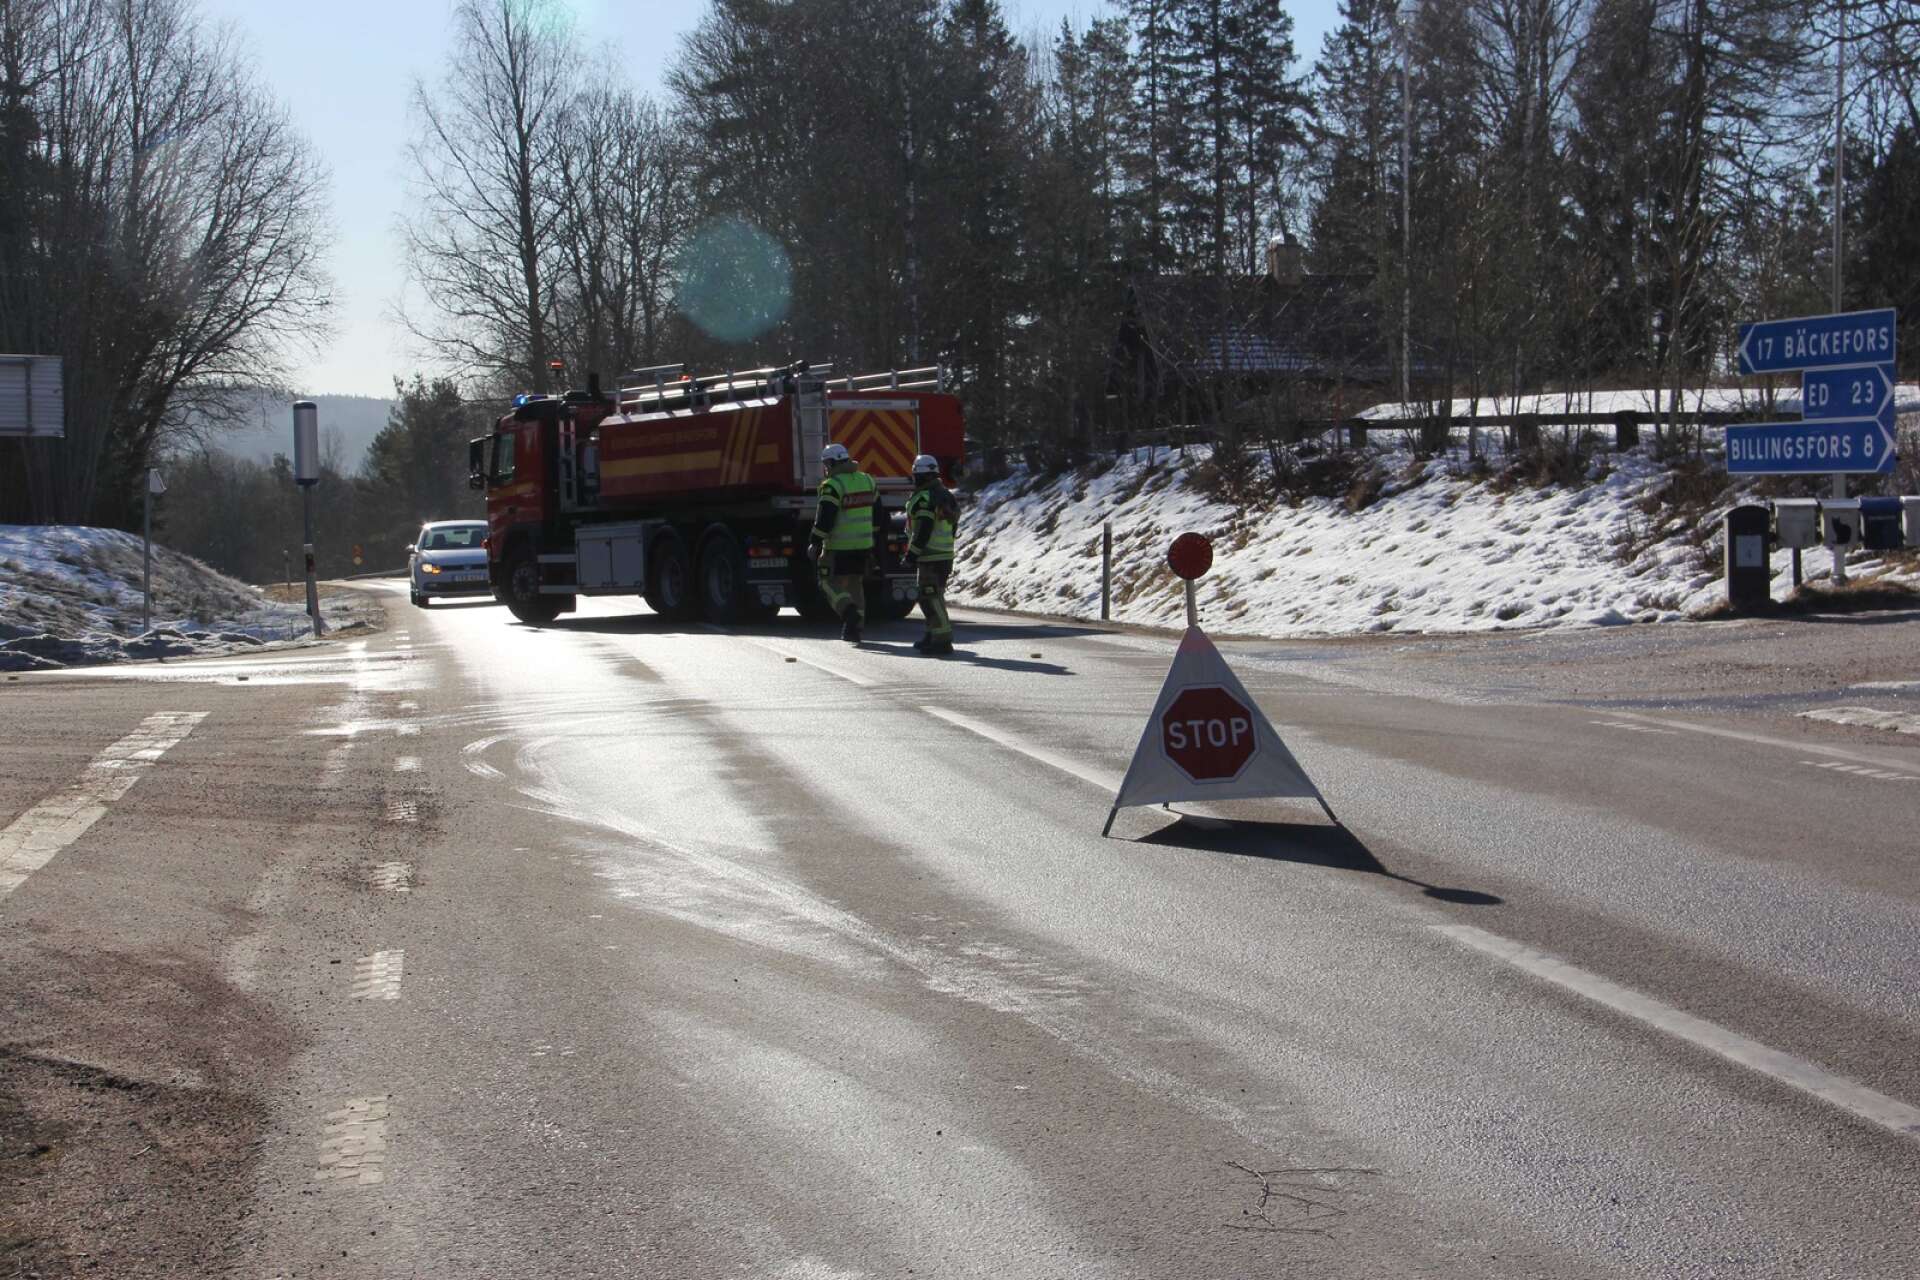 Väg 172 avstängd från Steneby bygdegård på grund av olycka mellan lastbil och personbil i höjd med Signebyn.